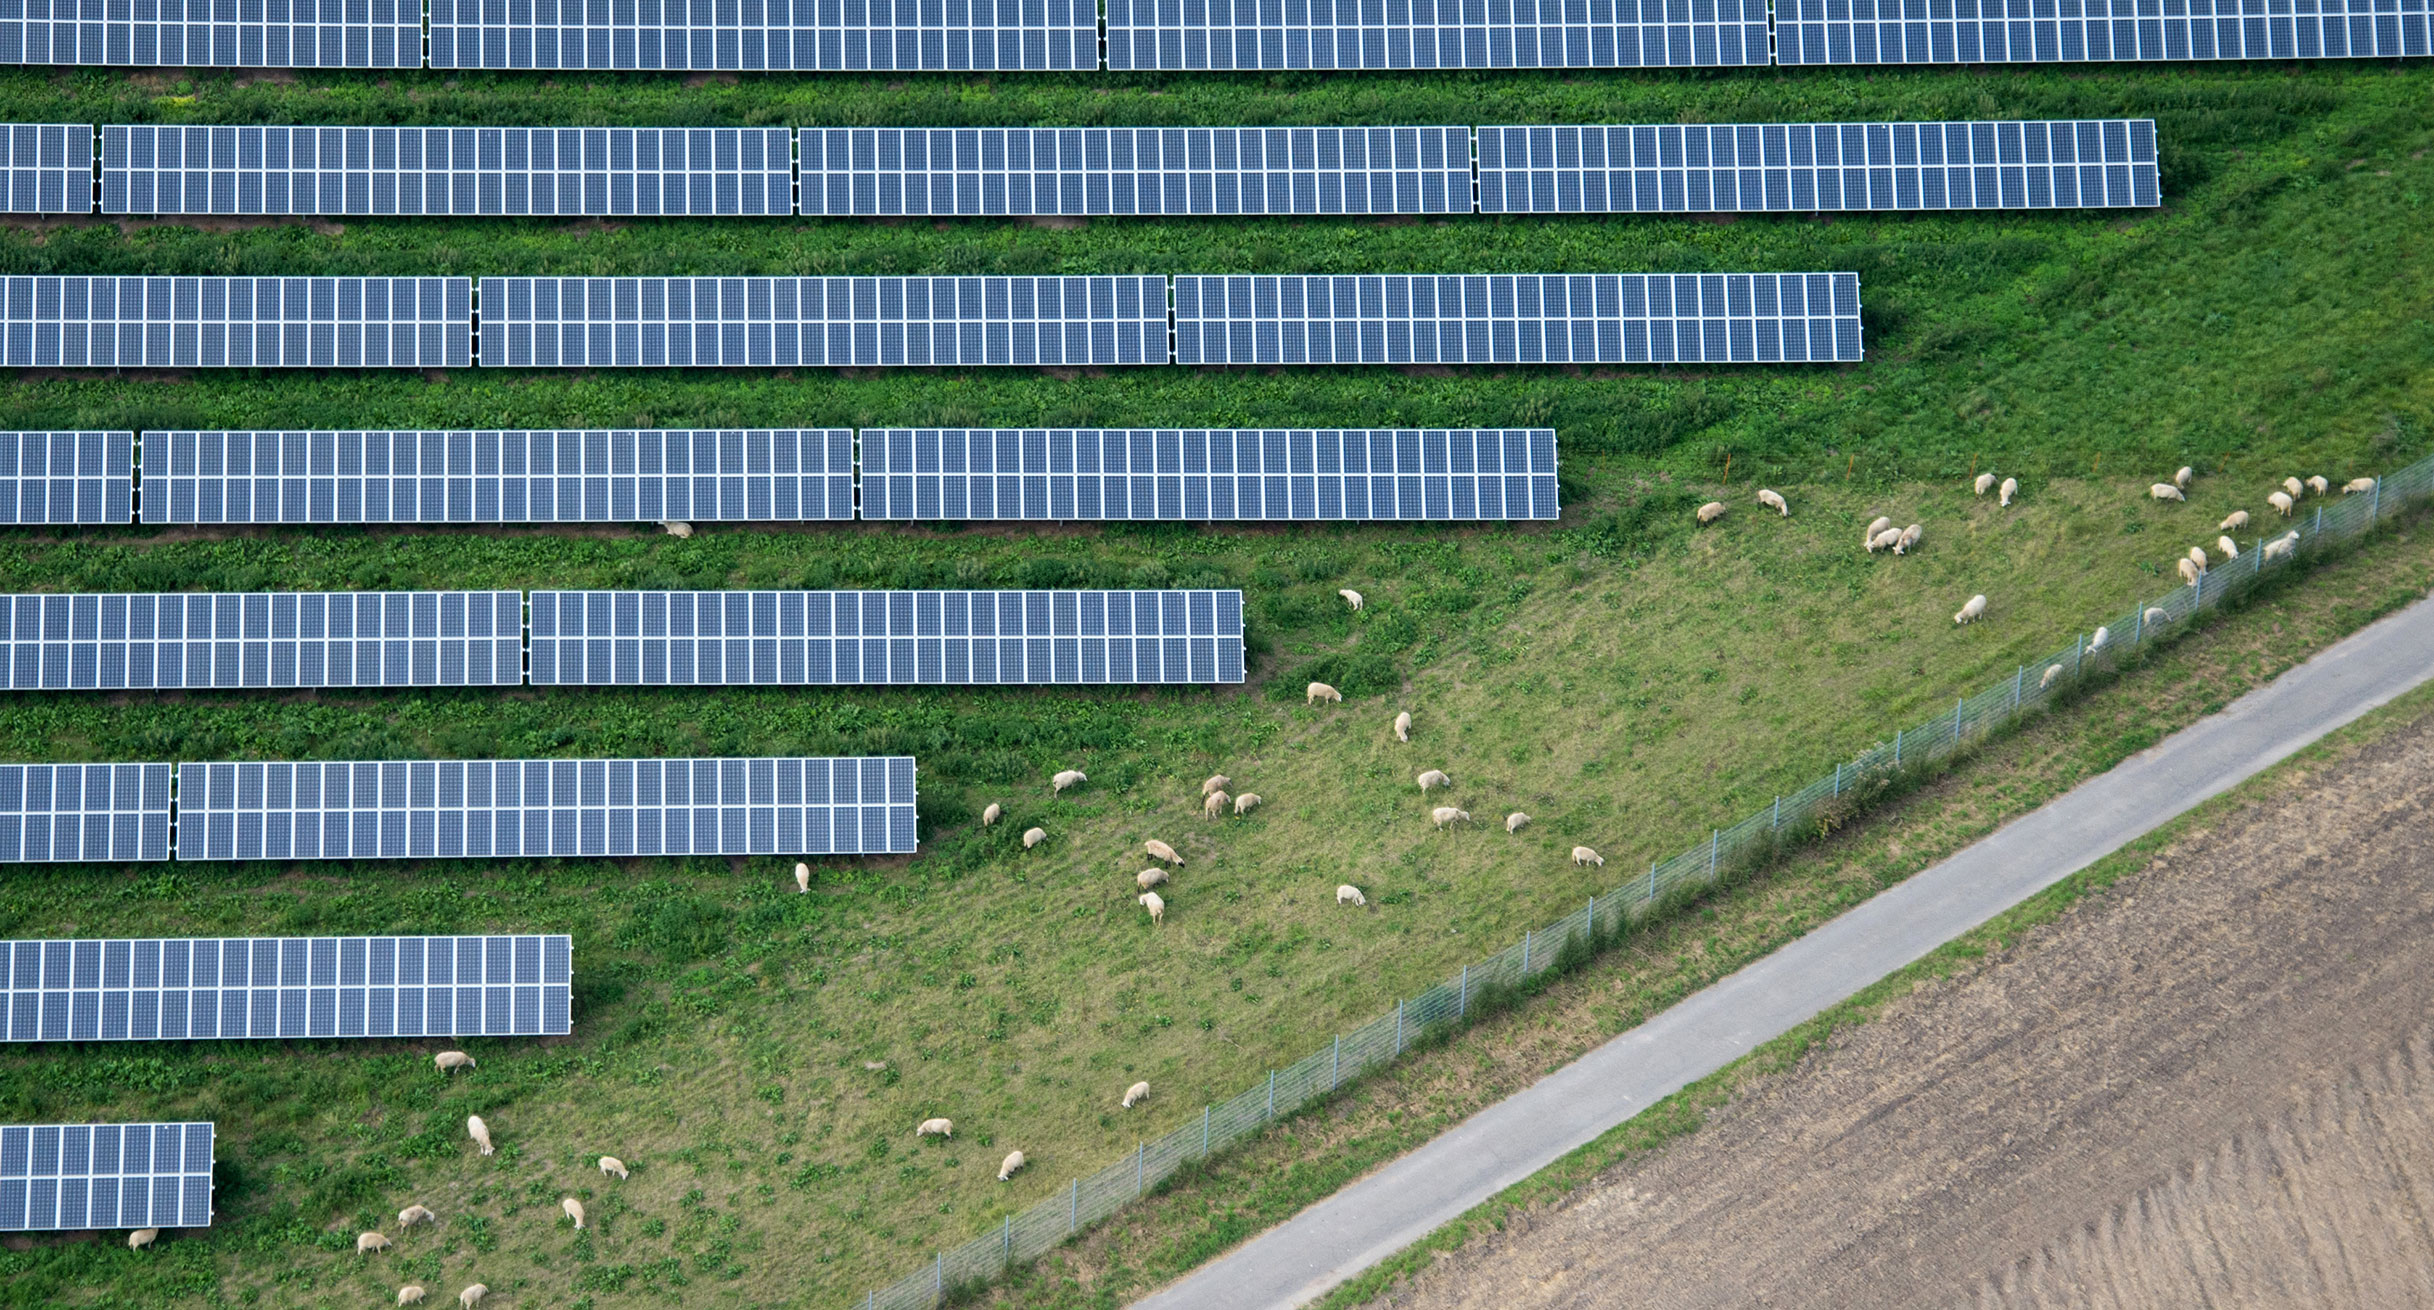 Symbolbild: Schafe grasen neben einem großen Feld mit Solaranlagen. (Bild: Julian Stratenschulte / dpa)']